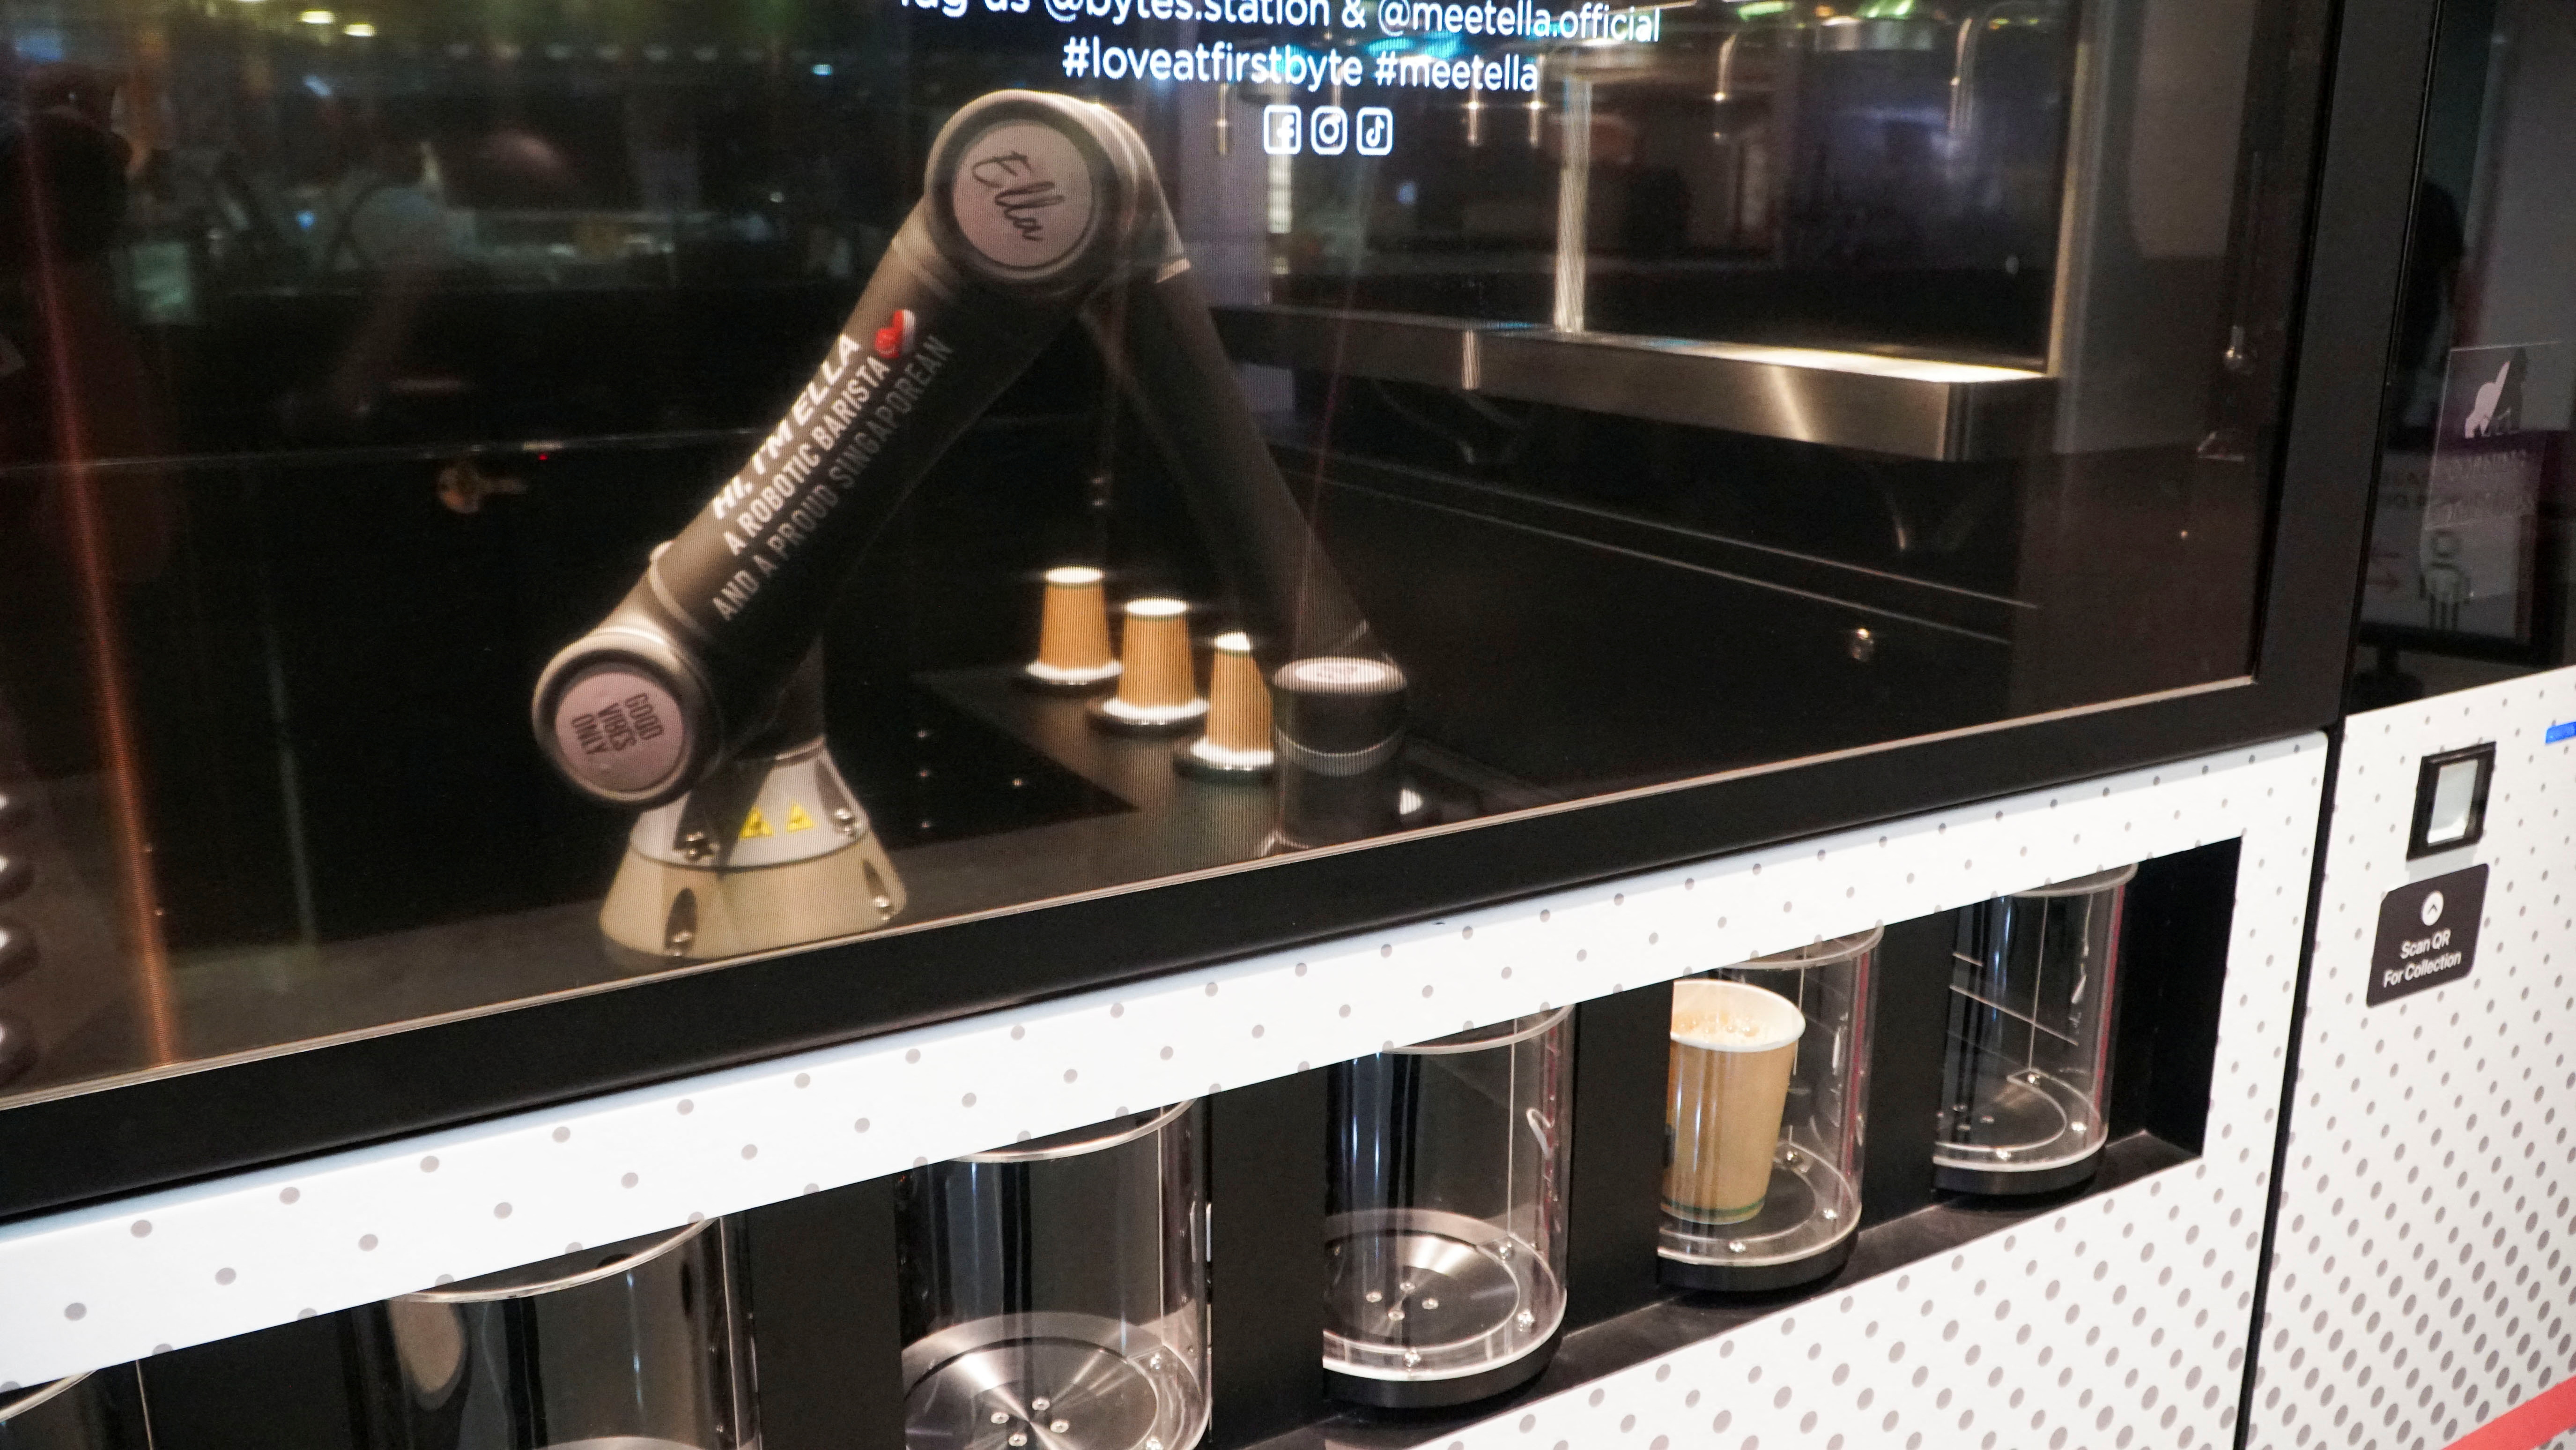 Робот-бариста «Элла», разработанный Crown Digital, самостоятельно готовит кофе после получения заказов в Сингапуре.